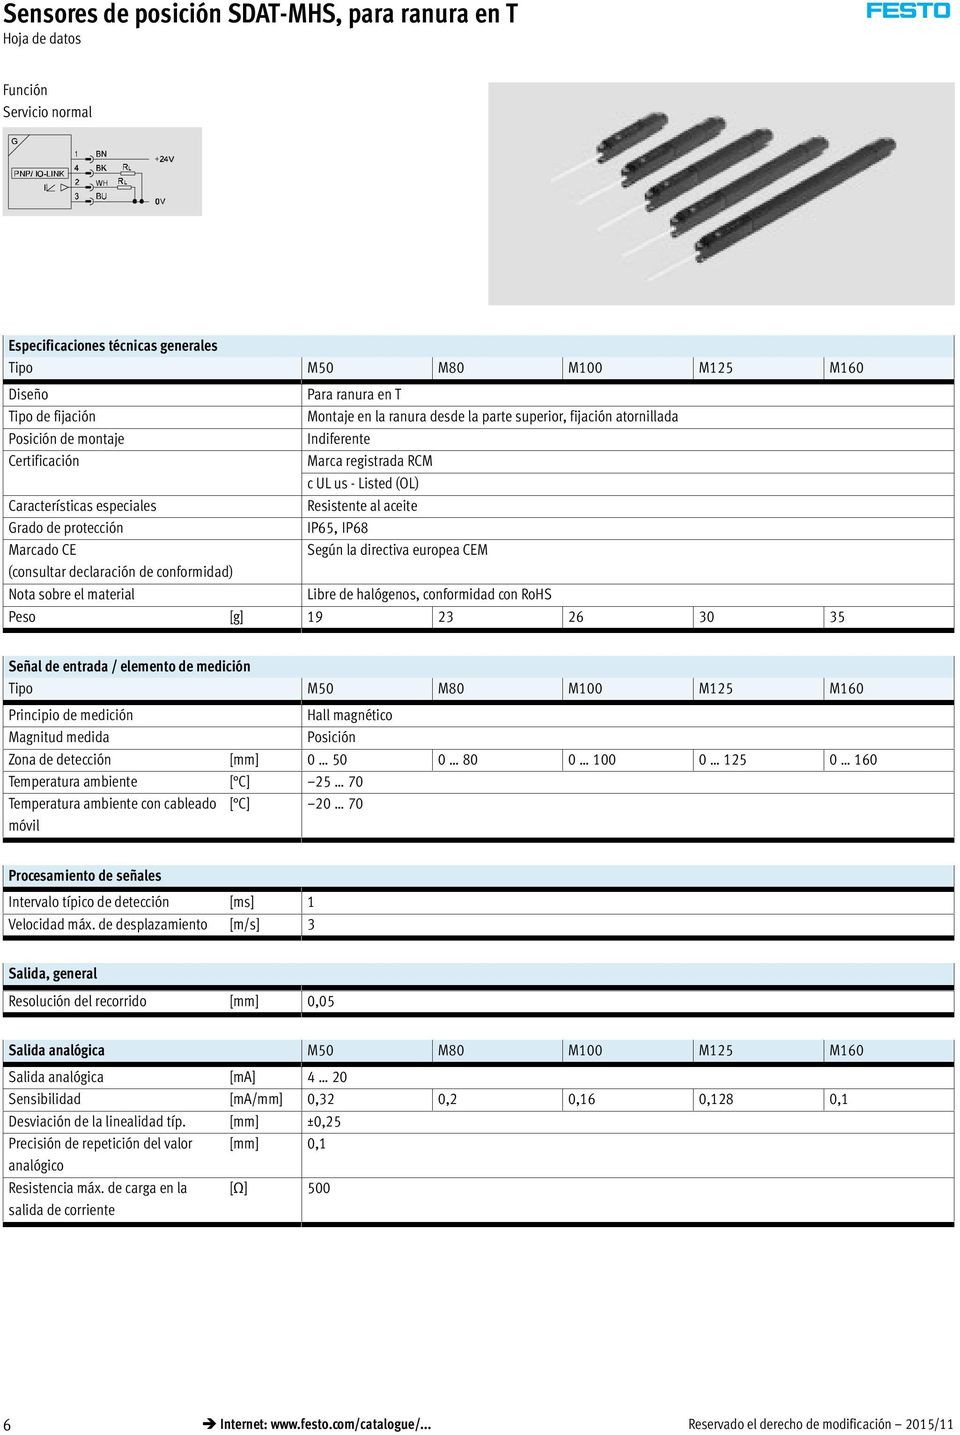 directiva europea CEM (consultar declaración de conformidad) Nota sobre el material Libre de halógenos, conformidad con RoHS Peso [g] 19 23 26 30 35 Señal de entrada / elemento de medición Tipo M50